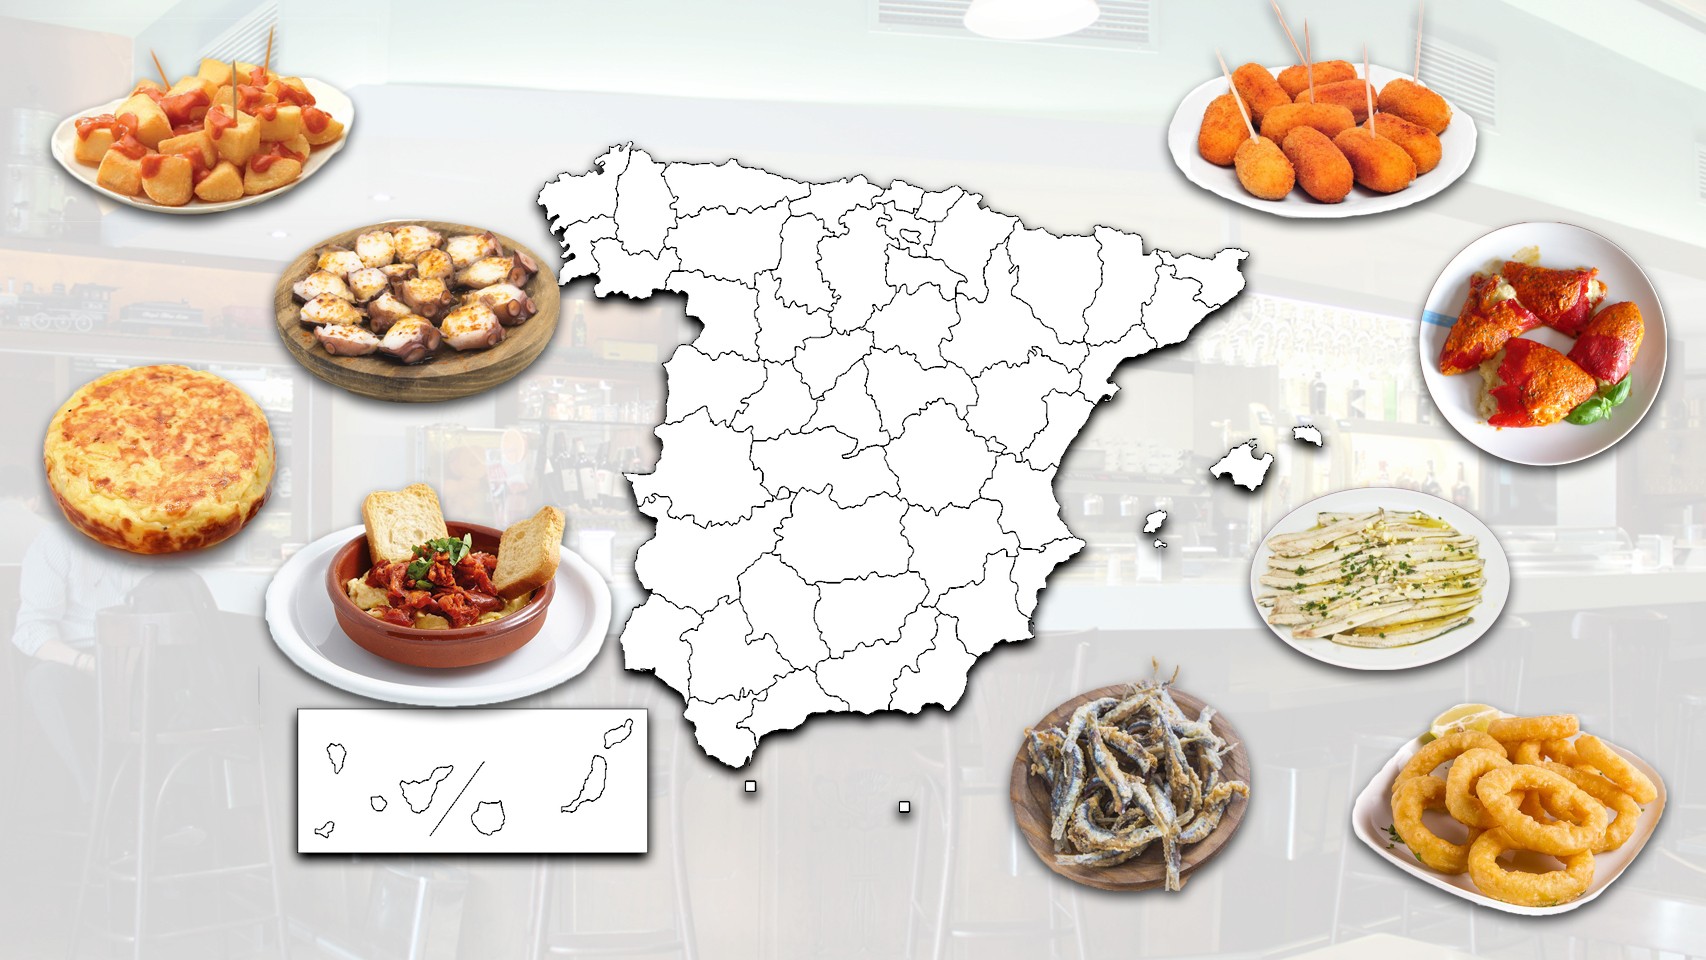 El mapa de España rodeado por algunas de las tapas más típicas este país.